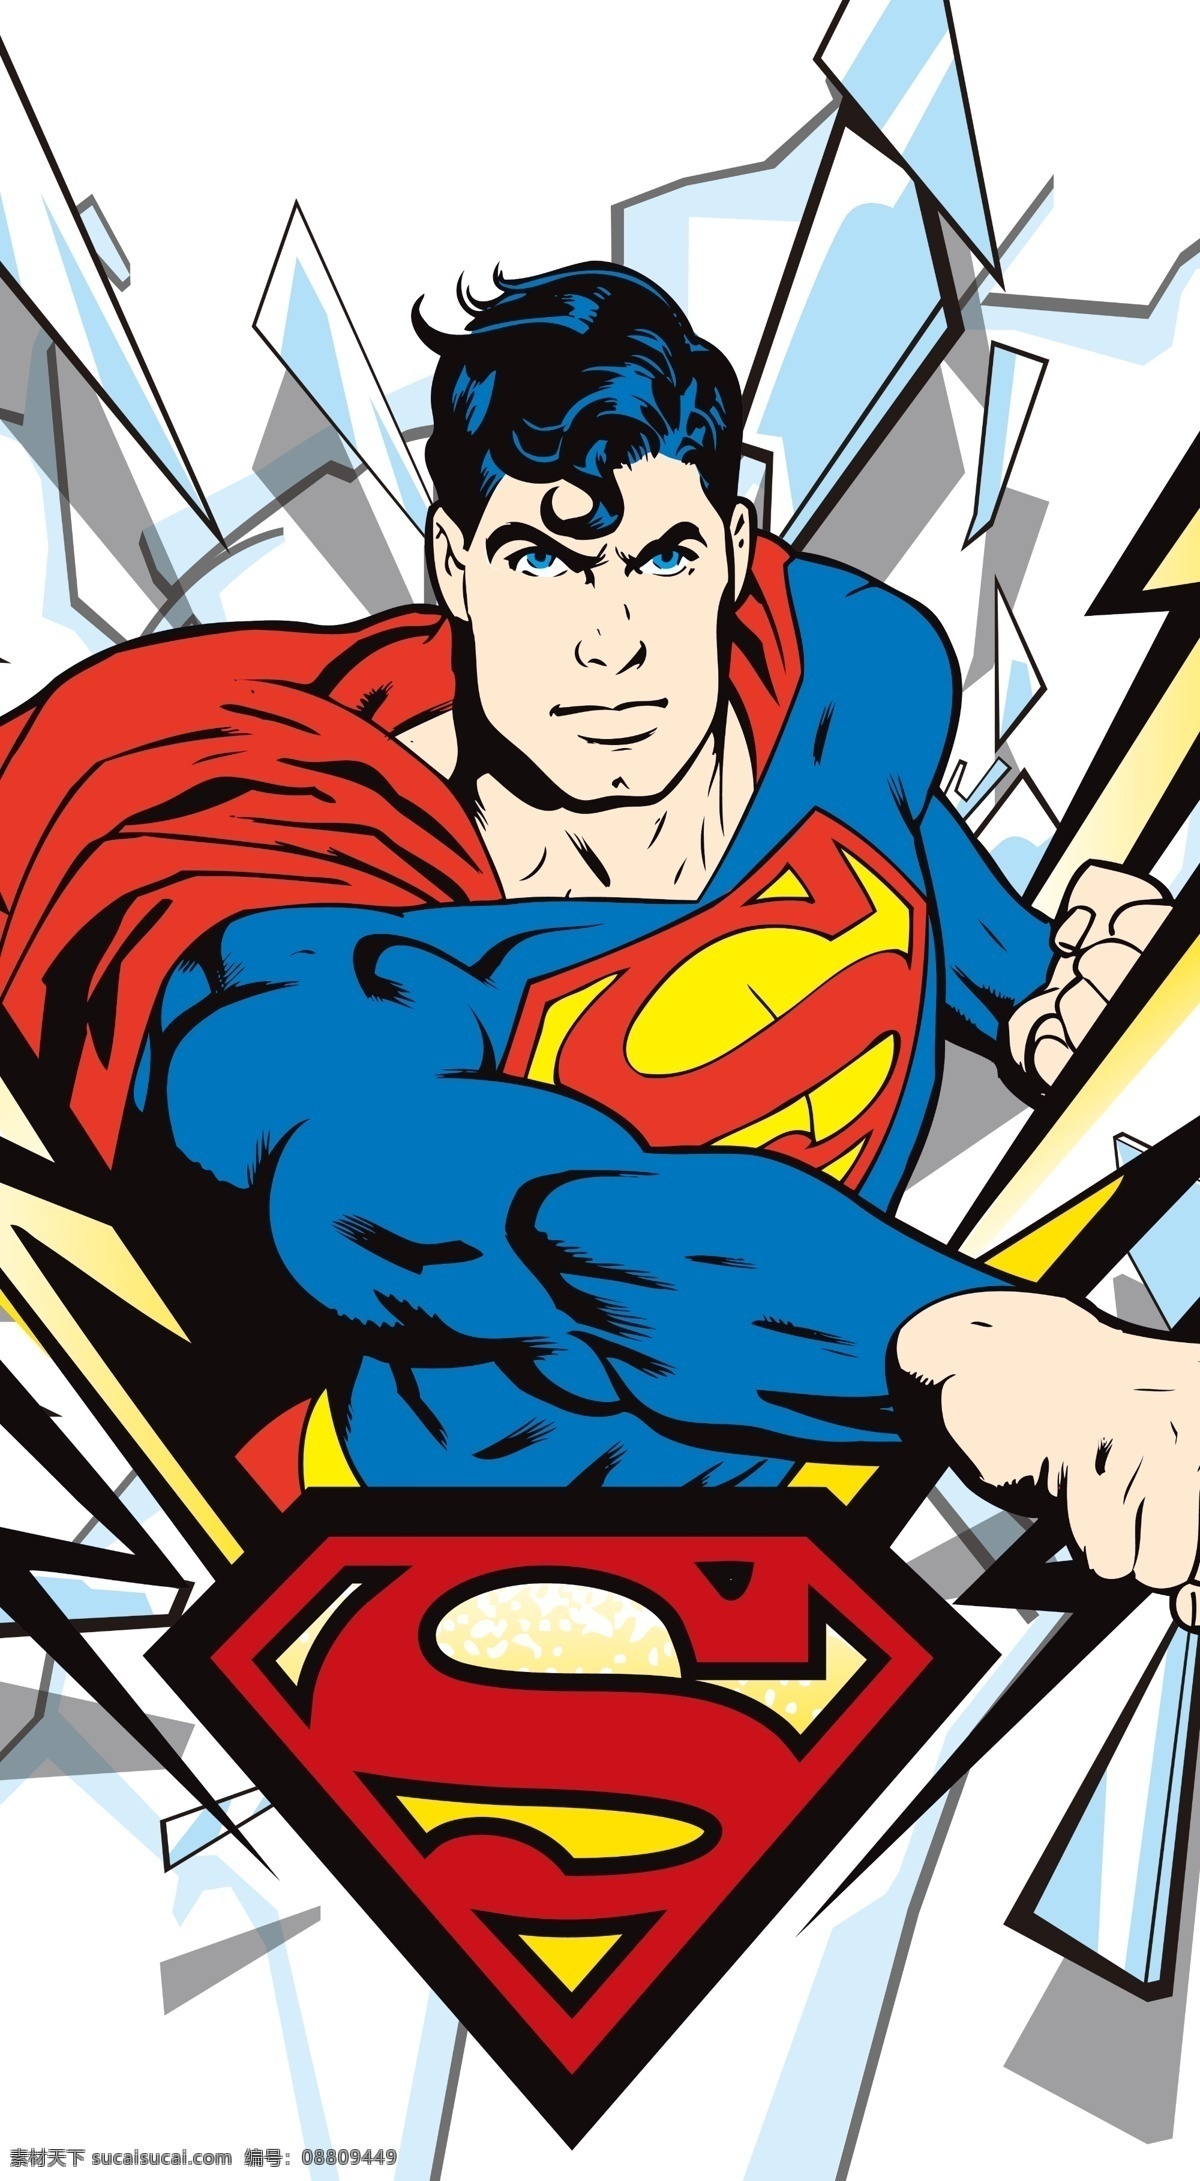 超人 superman 蝙蝠侠 batman 闪电侠 flash 华纳 dc漫画 超级英雄 英雄联盟 卡通形象 其他人物 矢量人物 卡通 分图层 复仇者 复仇者联盟 分层 源文件 白色